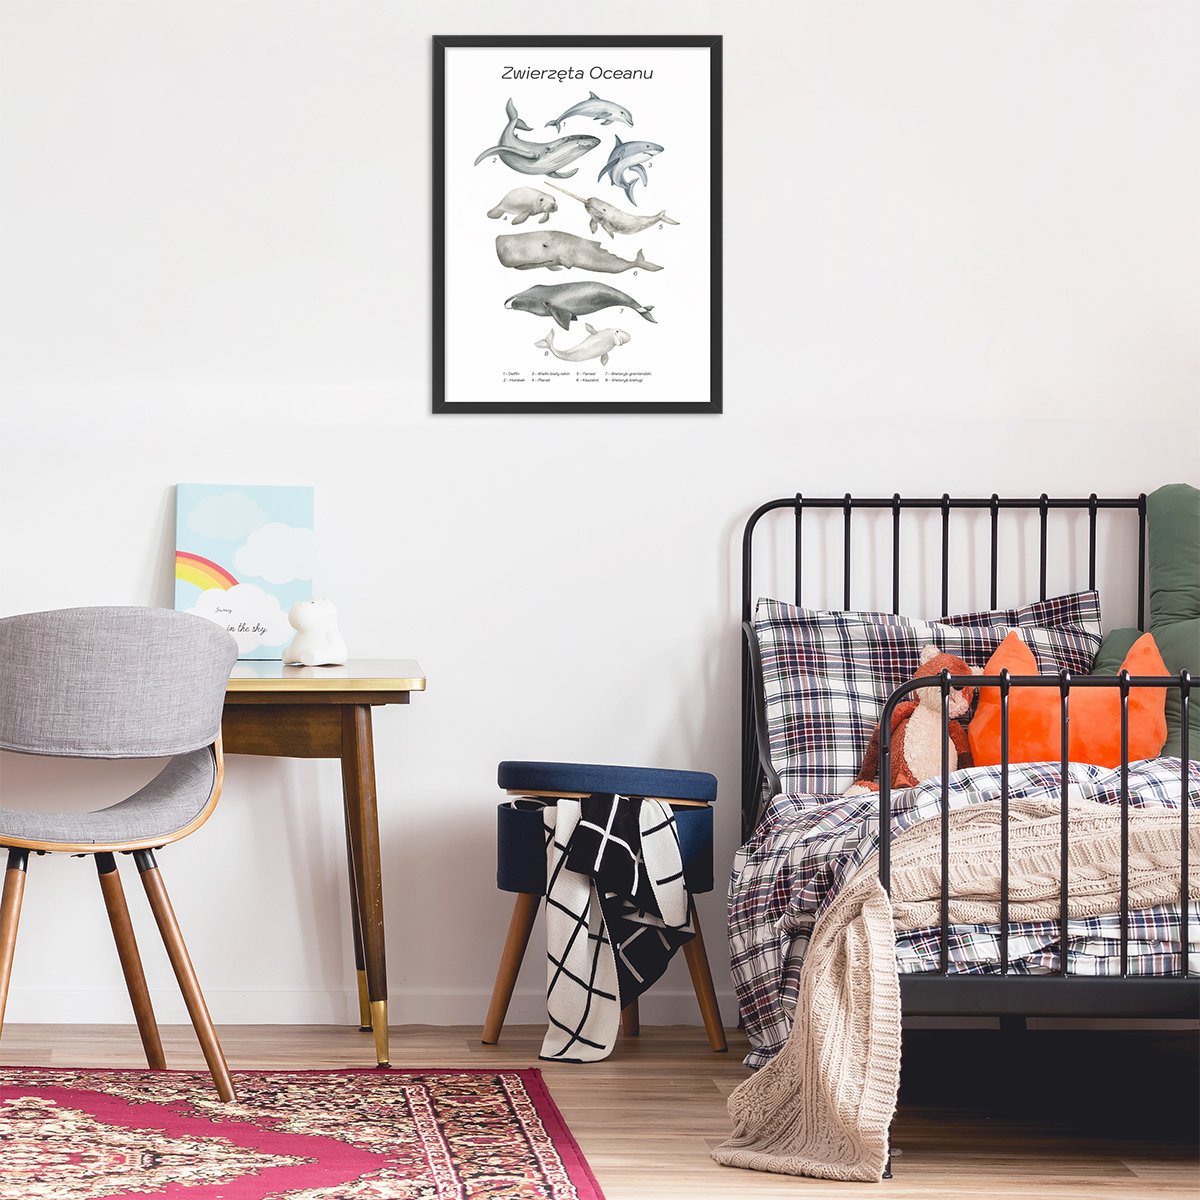 Plakat 50x70 cm do pokoju dziecięcego z wielorybami w czarnej ramce powieszony nad łóżkiem dziecka#jezyk_polski